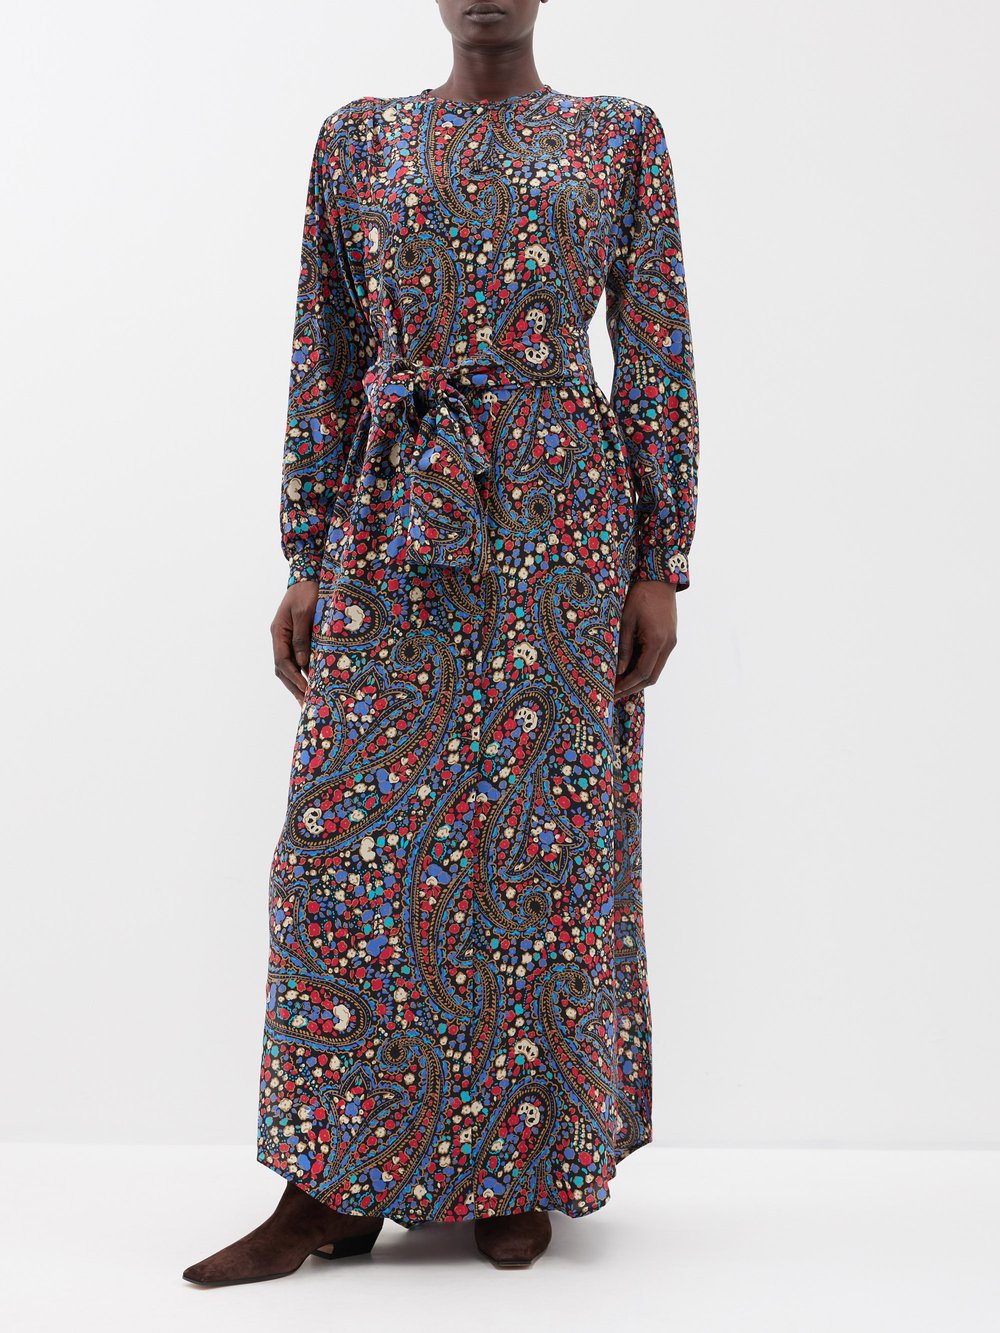 Шелковое платье с принтом пейсли из коллаборации с cabana menorquin Blazé Milano, мультиколор цена и фото